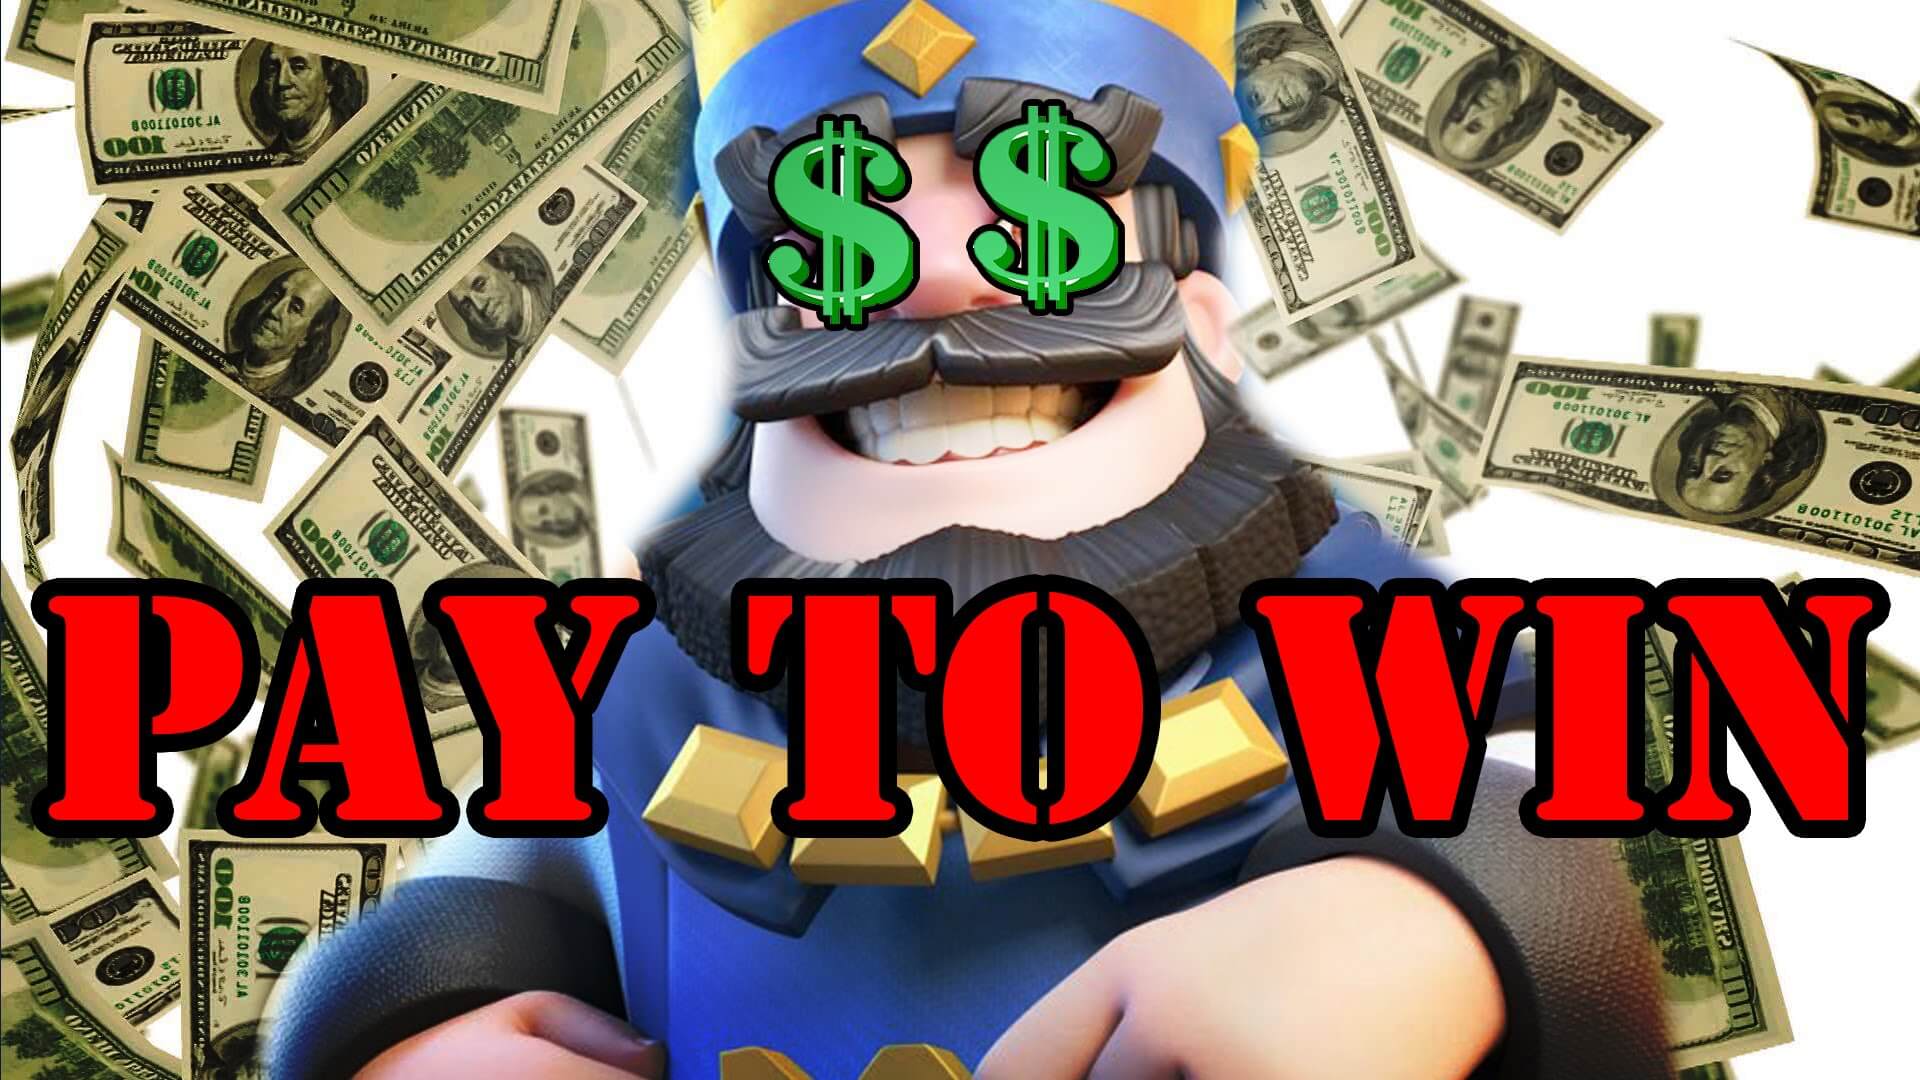 pay-to-win-juegos.jpg